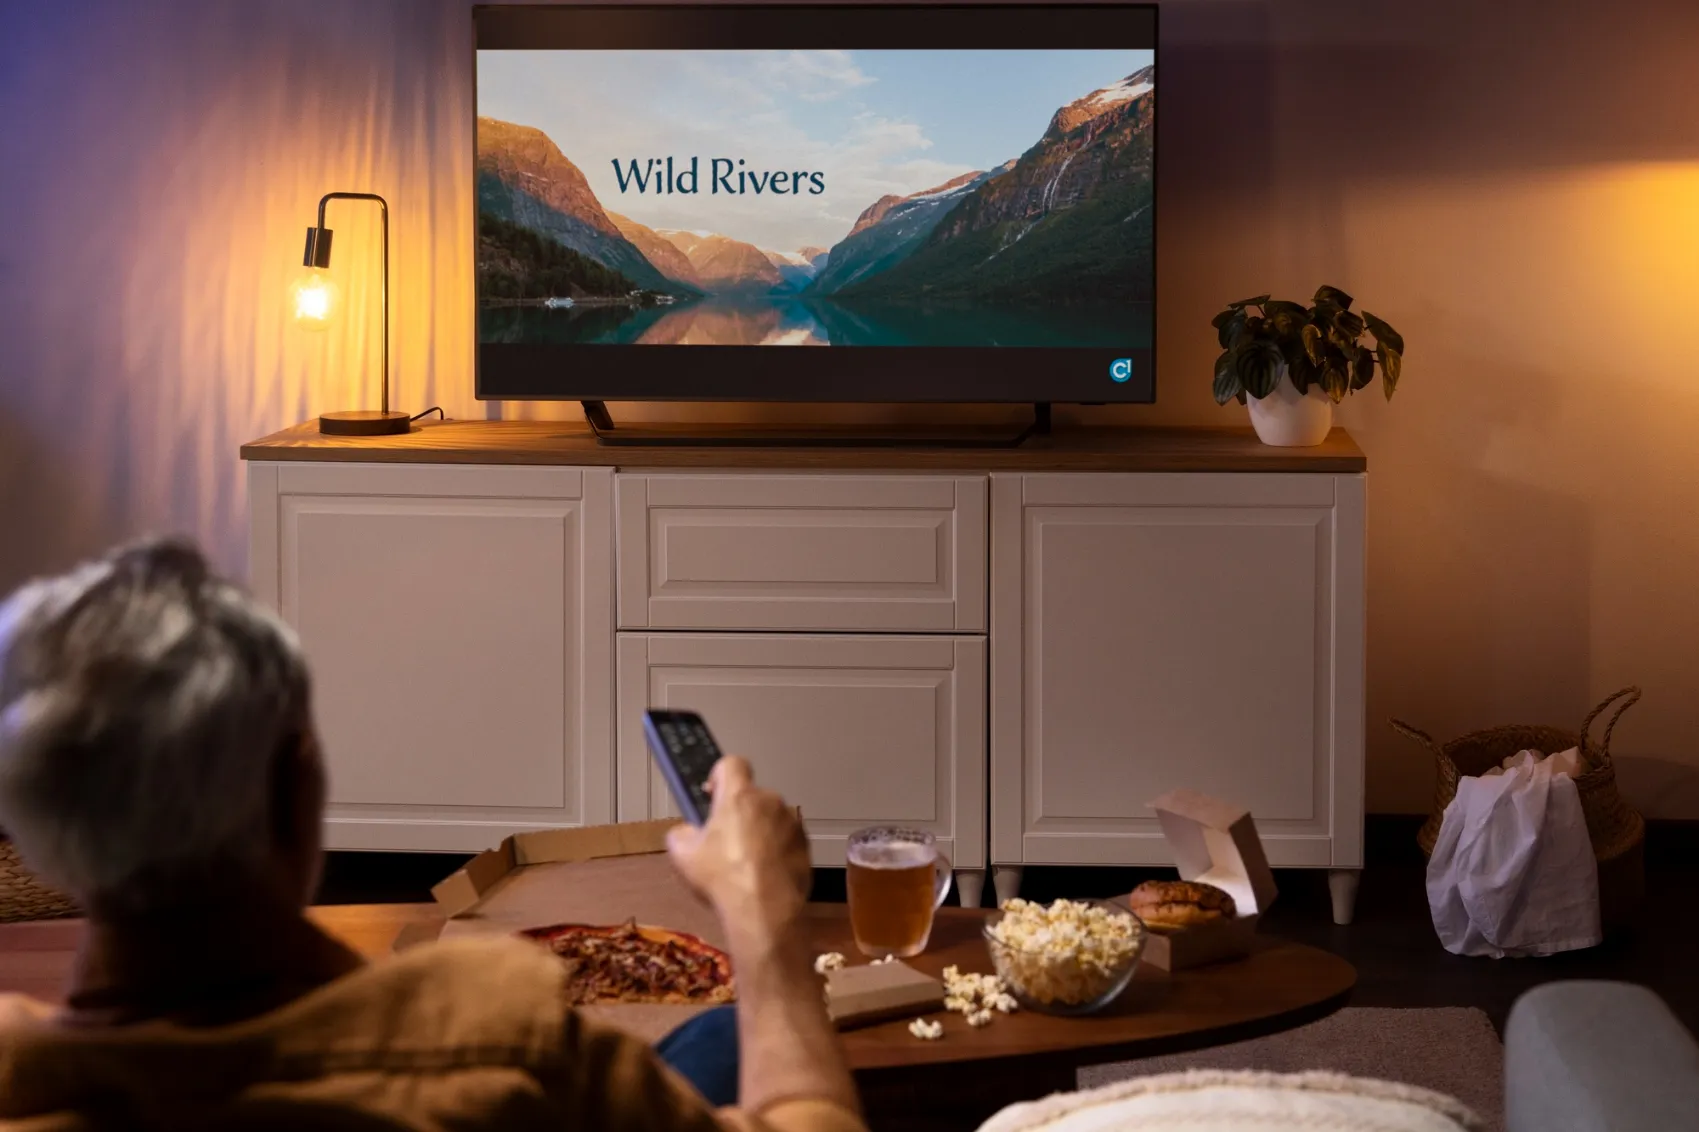 A man enjoys a Smart TV, embracing the benefits of modern tech.